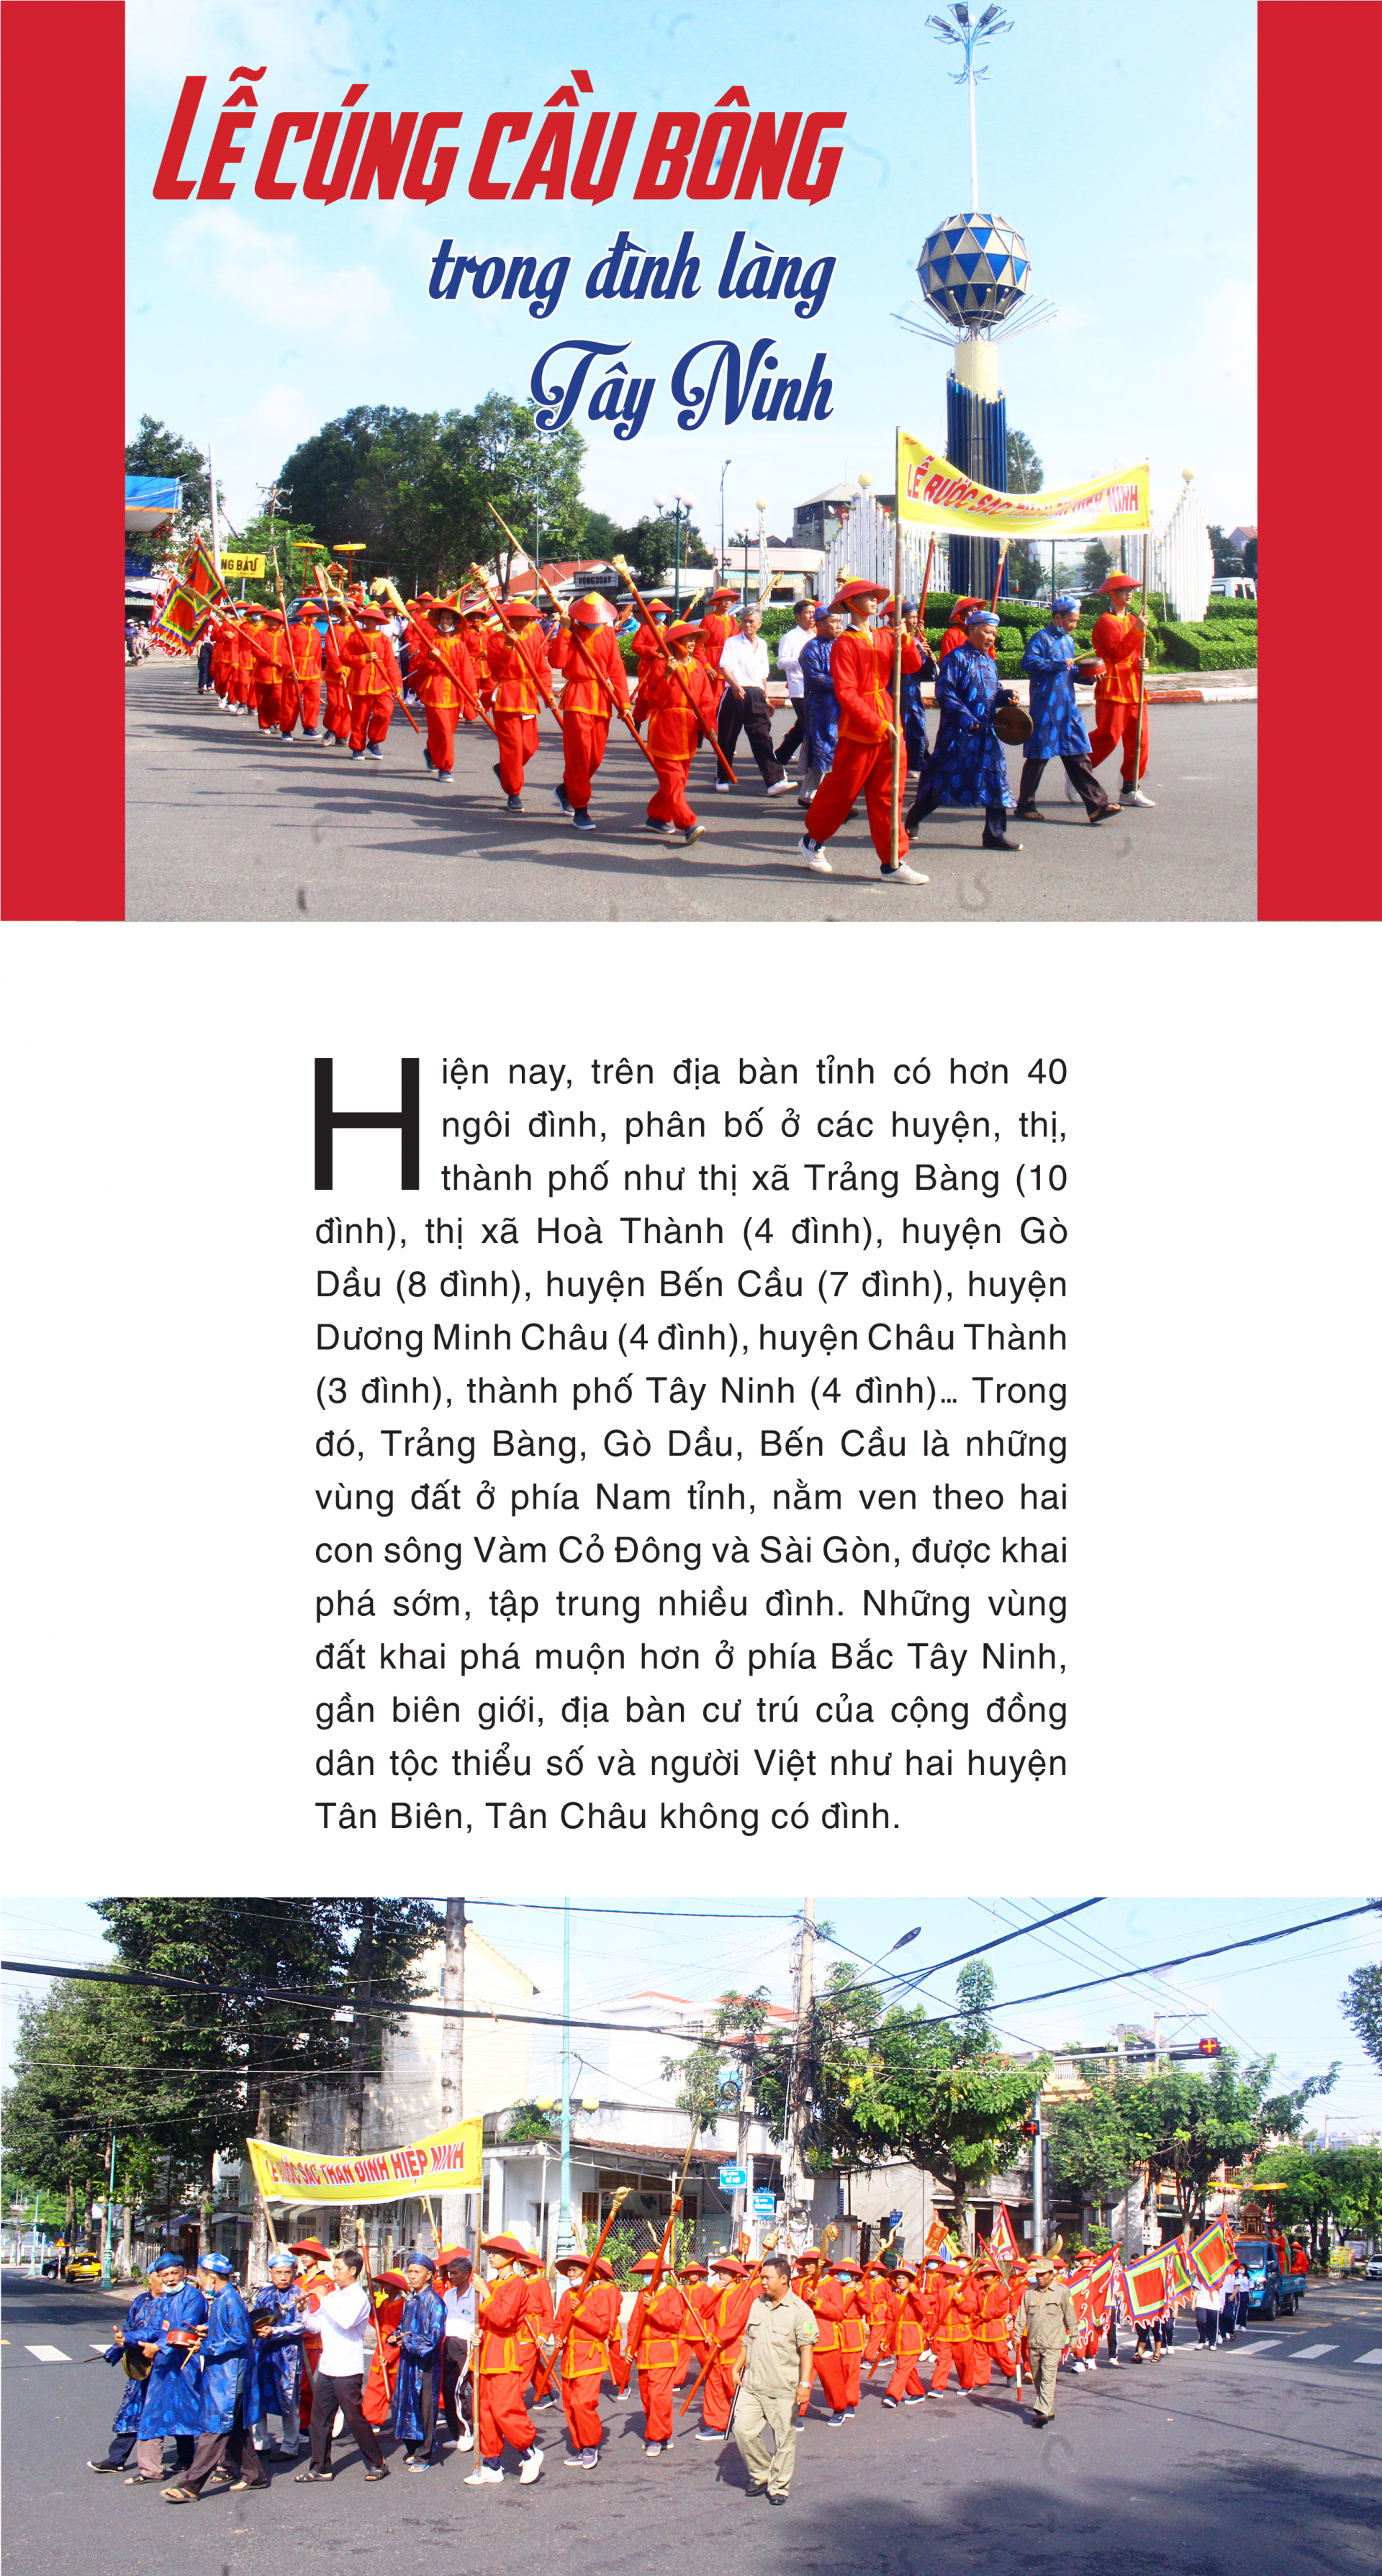 Lễ cúng cầu bông trong đình làng Tây Ninh